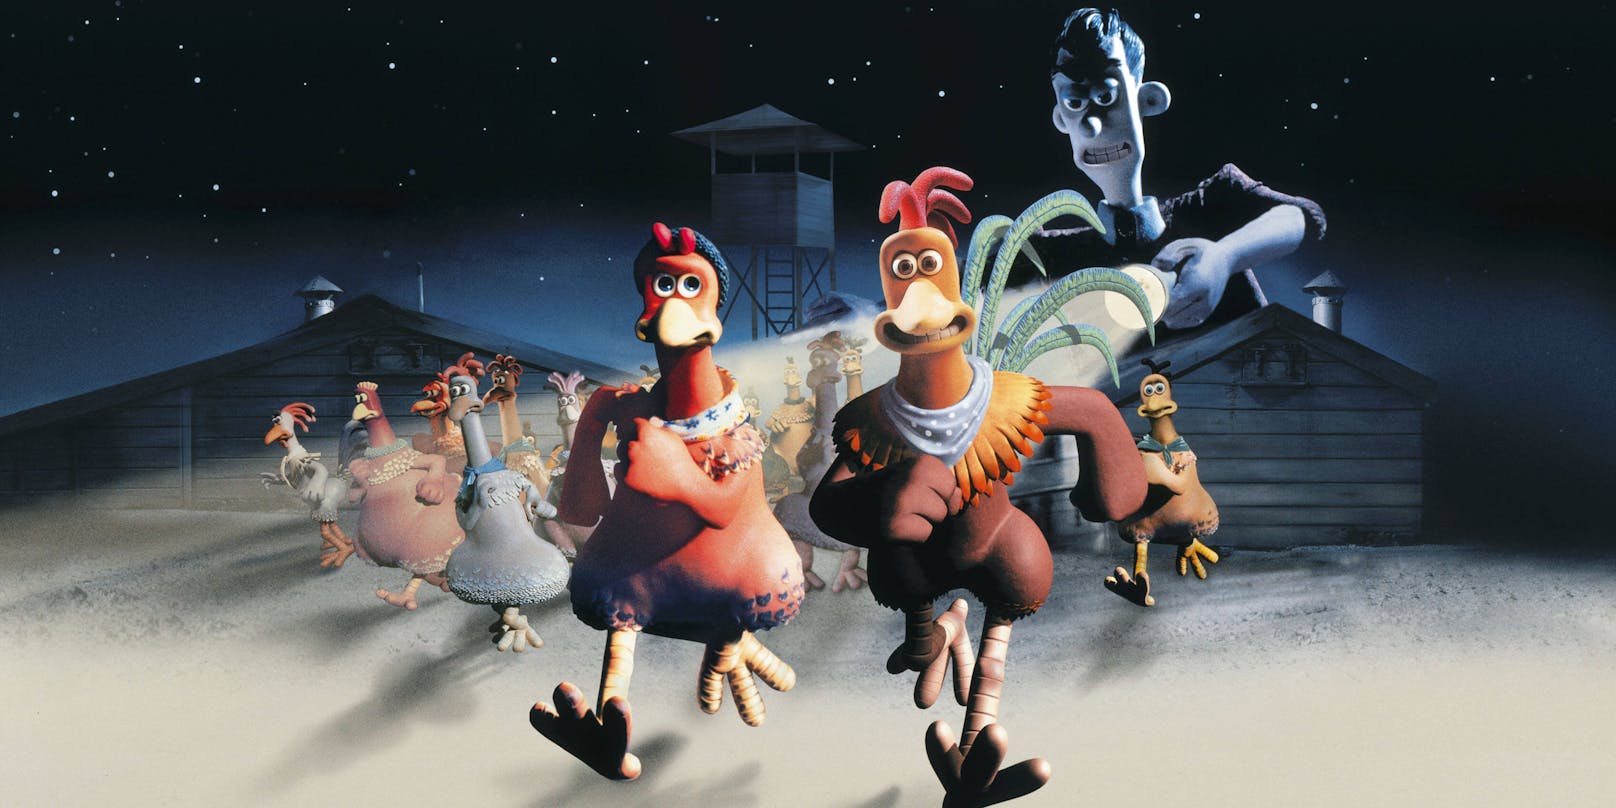 Der Animationsfilm "Chicken Run - Hennen rennen" bekommt auf Netflix eine Fortsetzung, allerdings wird Mel Gibson keine Sprechrolle mehr erhalten.